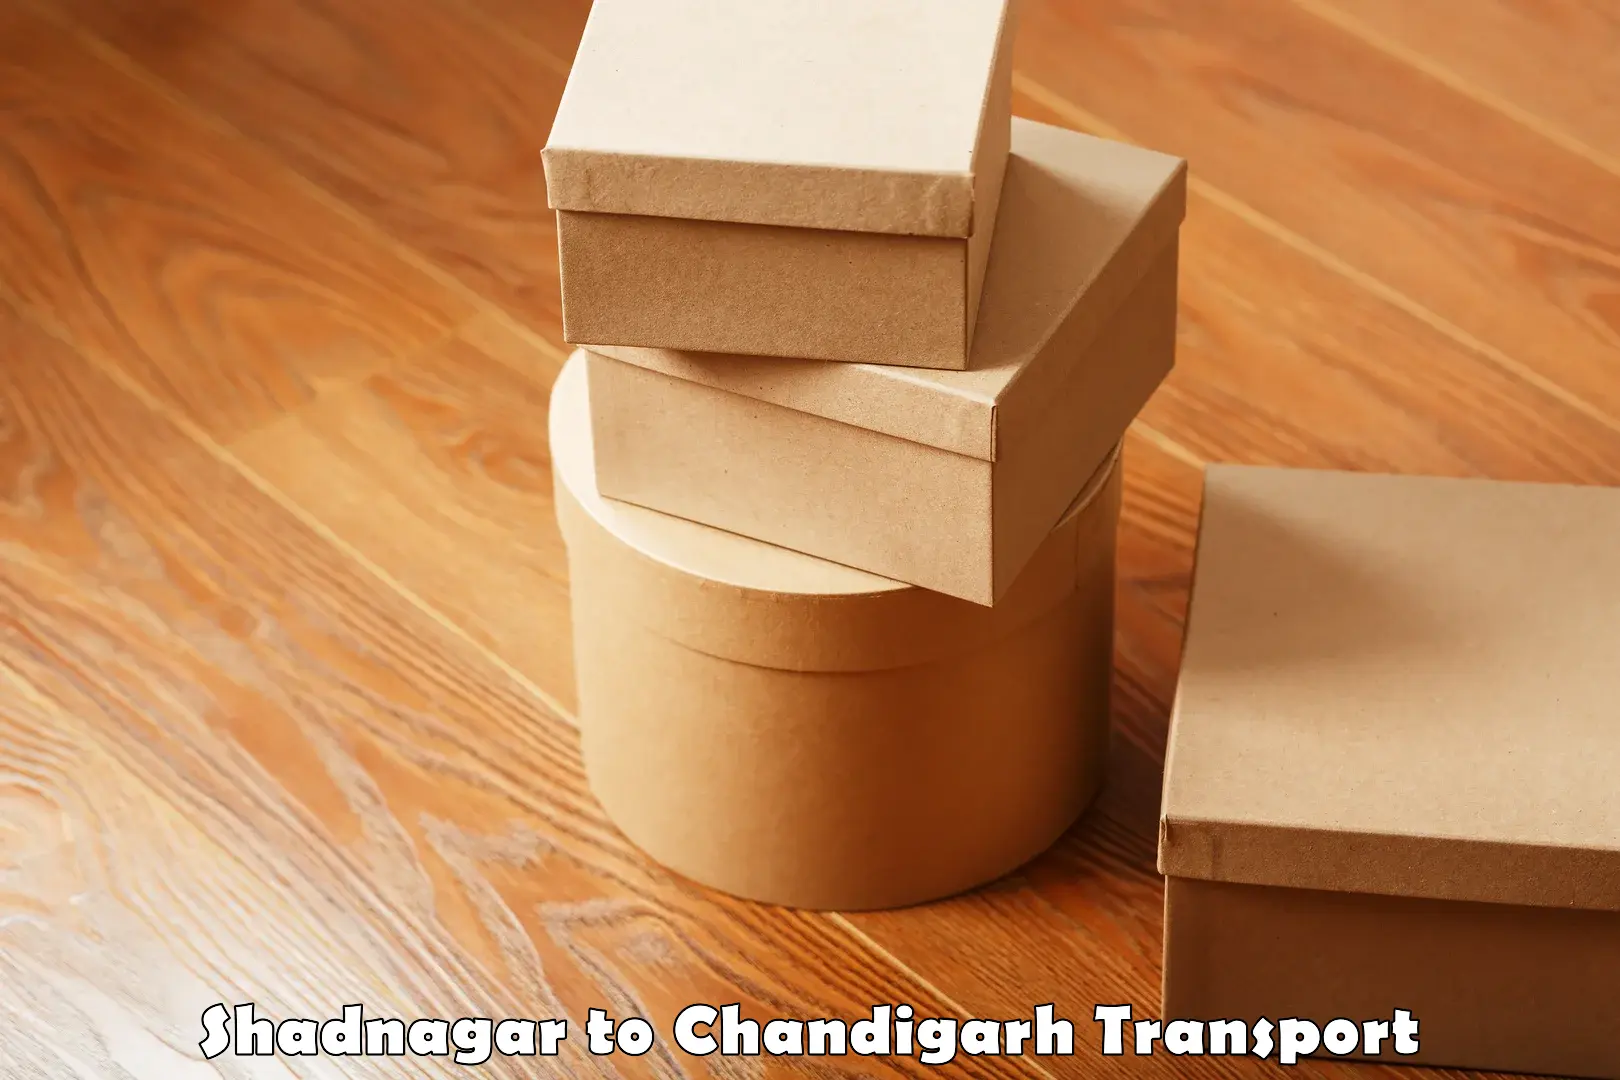 Furniture transport service Shadnagar to Chandigarh